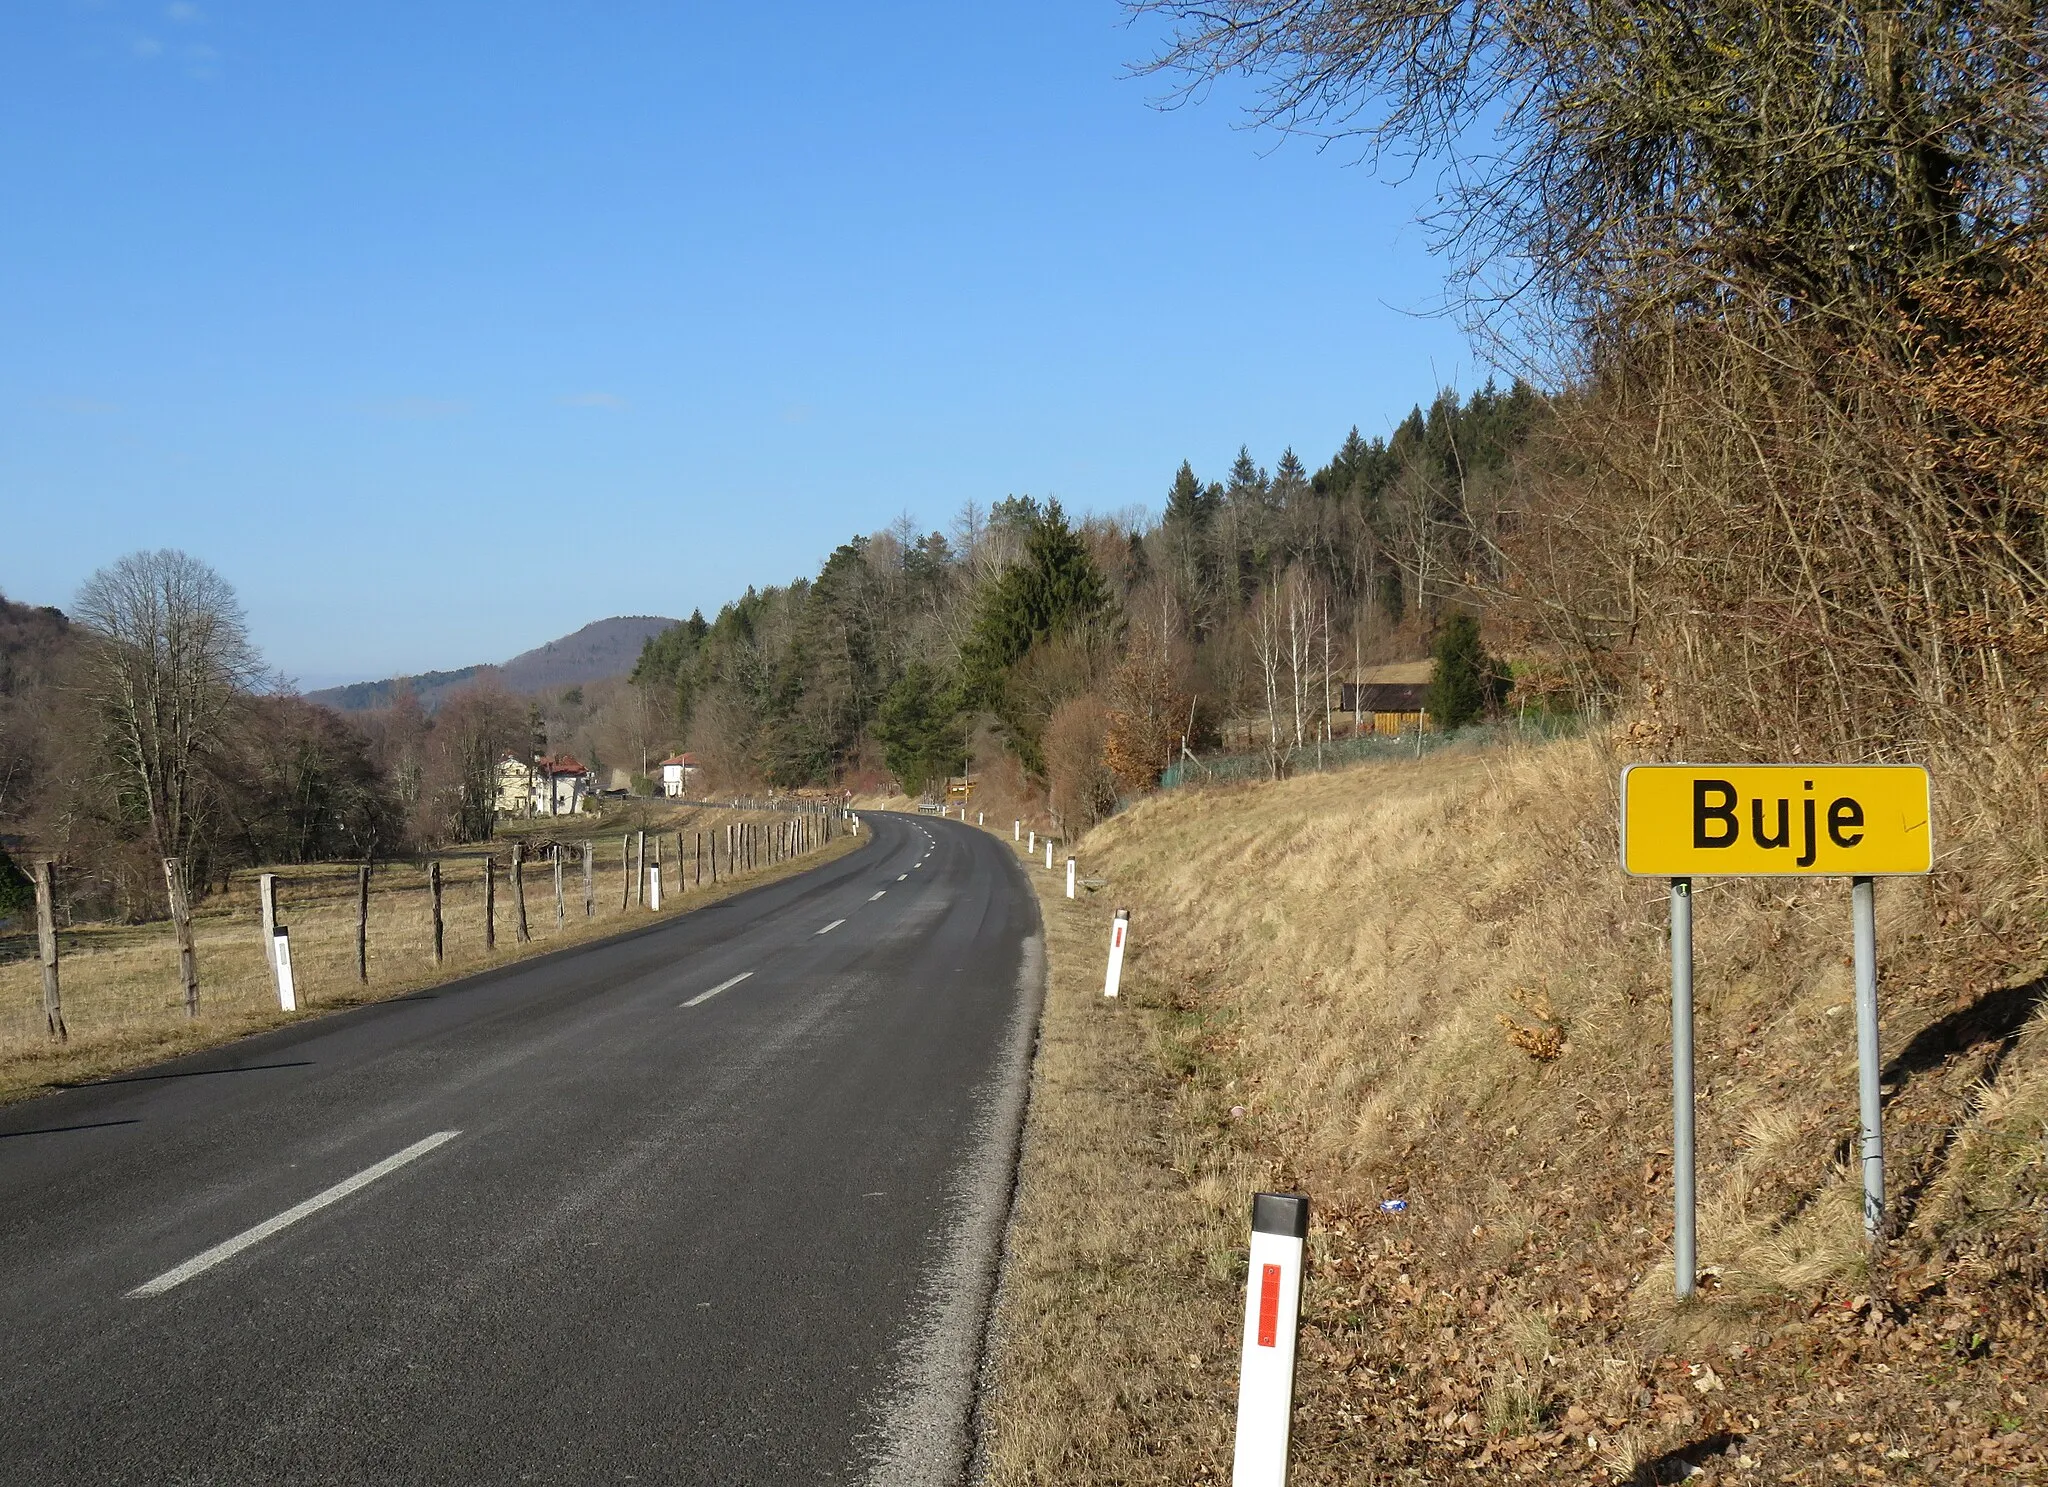 Photo showing: Buje, Municipality of Pivka, Slovenia